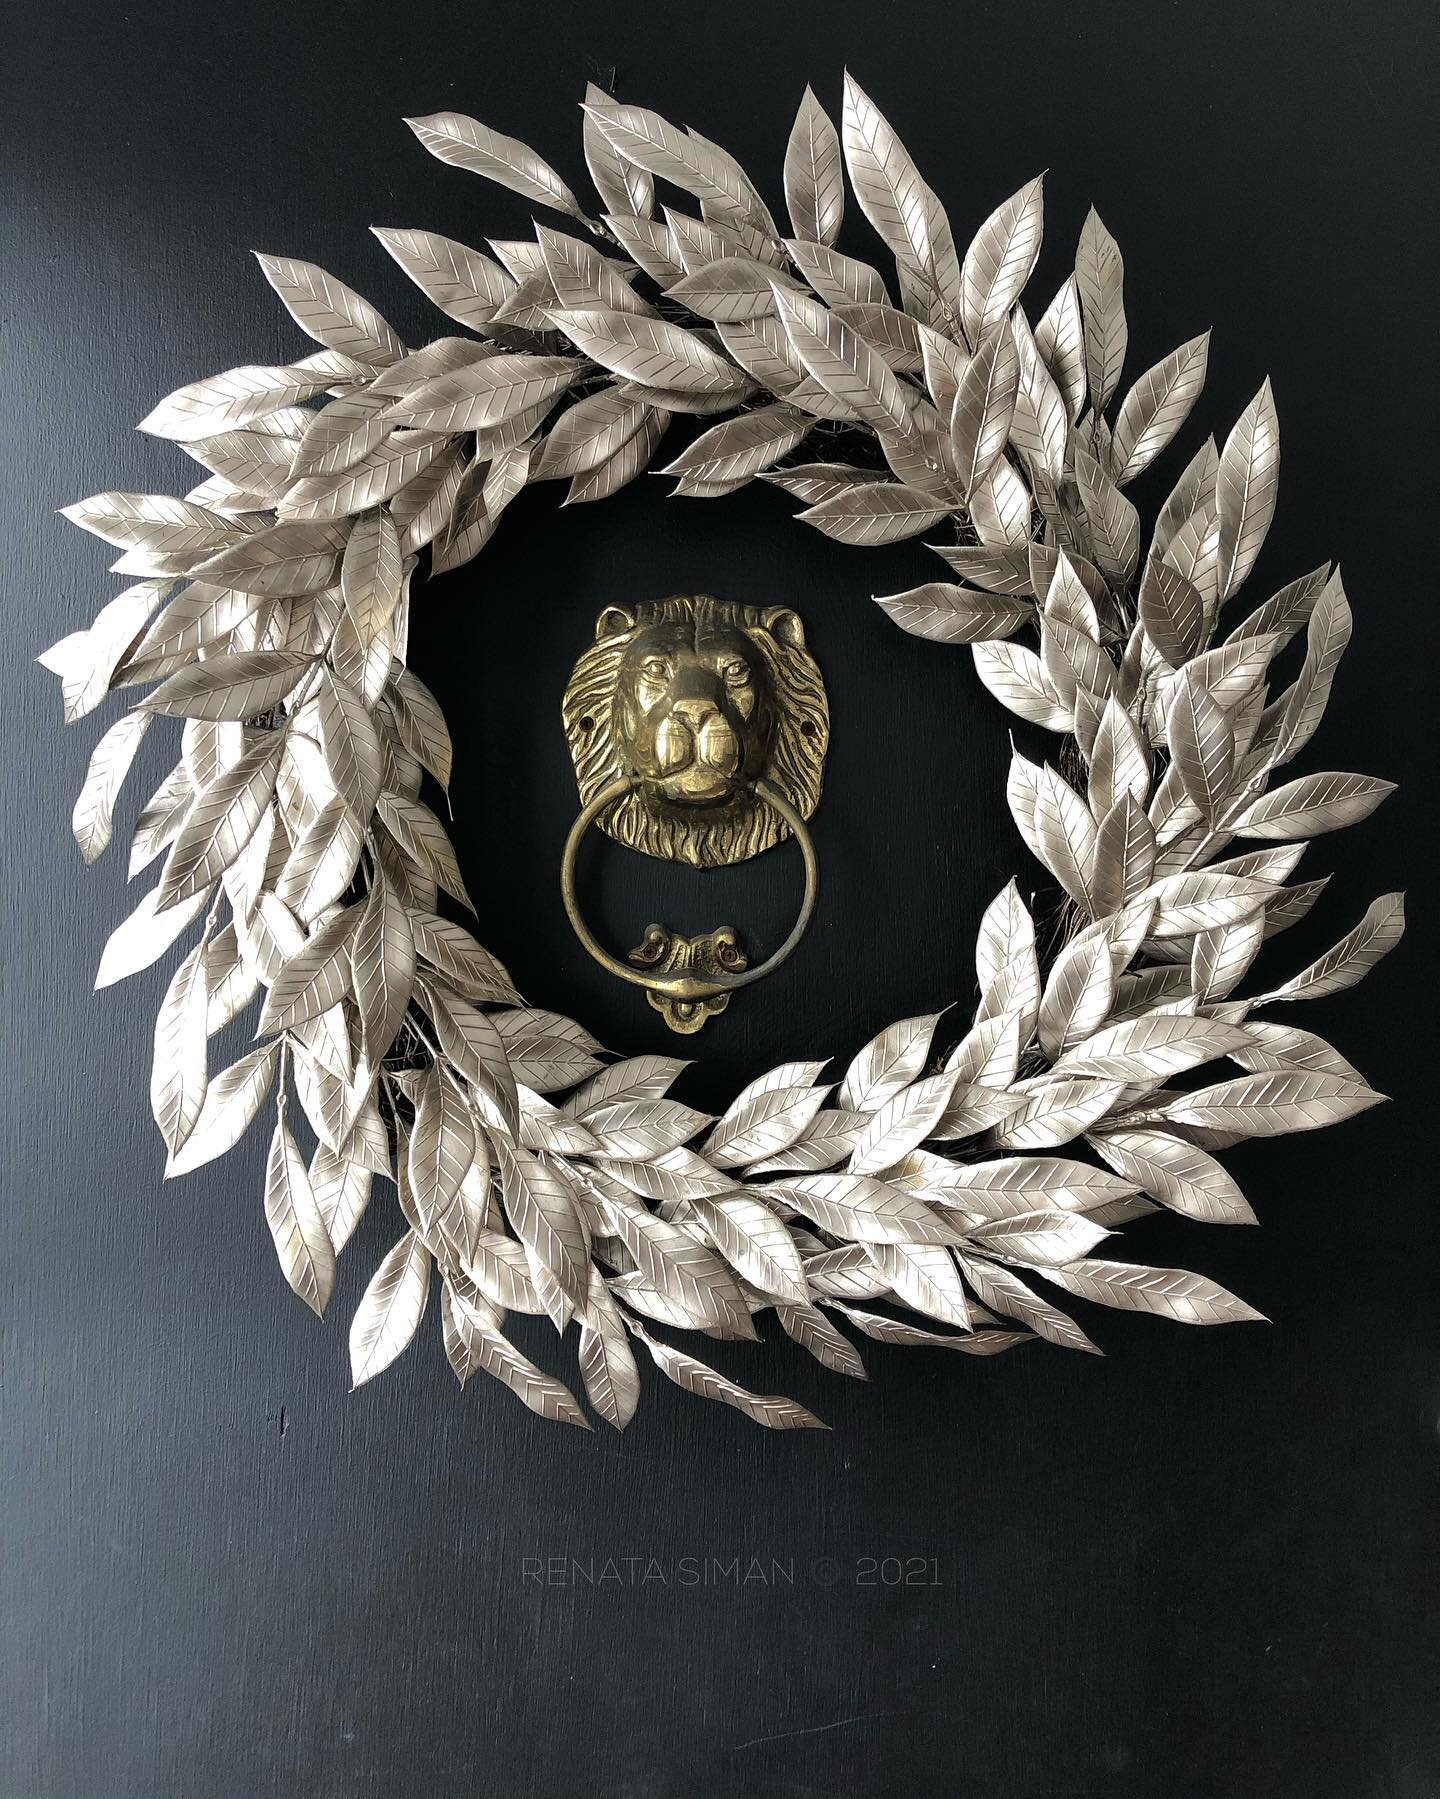 &bull; Lonely front door lion gets a makeover. Clad in shimmery pewter leaf wreath. 
_____________________________________
#bronze #brasslion #doorknocker #pewter #frontdoor #wreath #renata #winterdecor